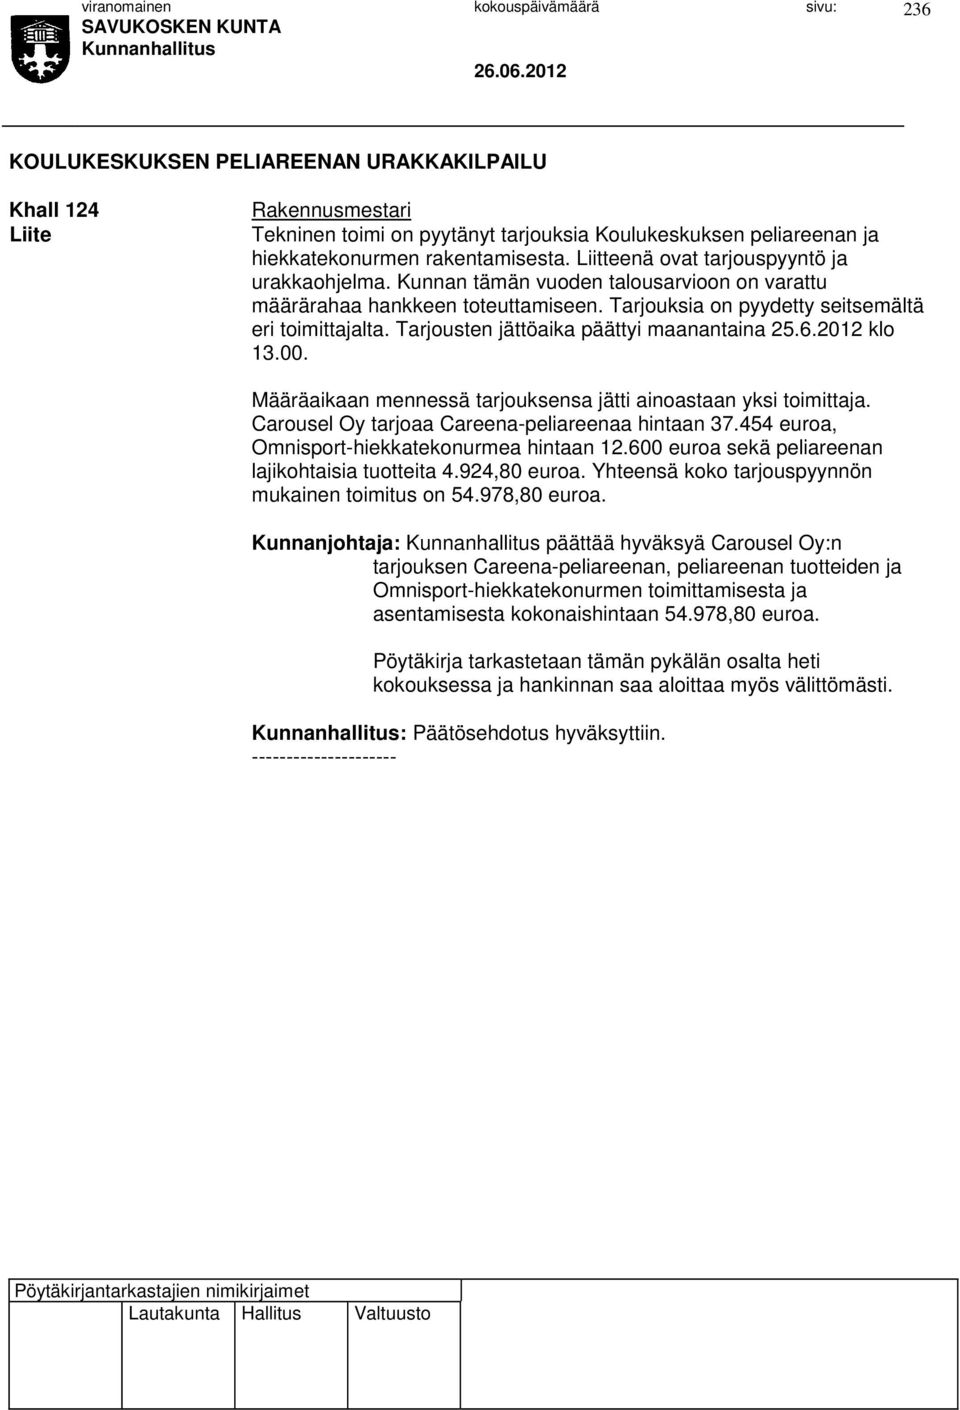 Tarjousten jättöaika päättyi maanantaina 25.6.2012 klo 13.00. Määräaikaan mennessä tarjouksensa jätti ainoastaan yksi toimittaja. Carousel Oy tarjoaa Careena-peliareenaa hintaan 37.